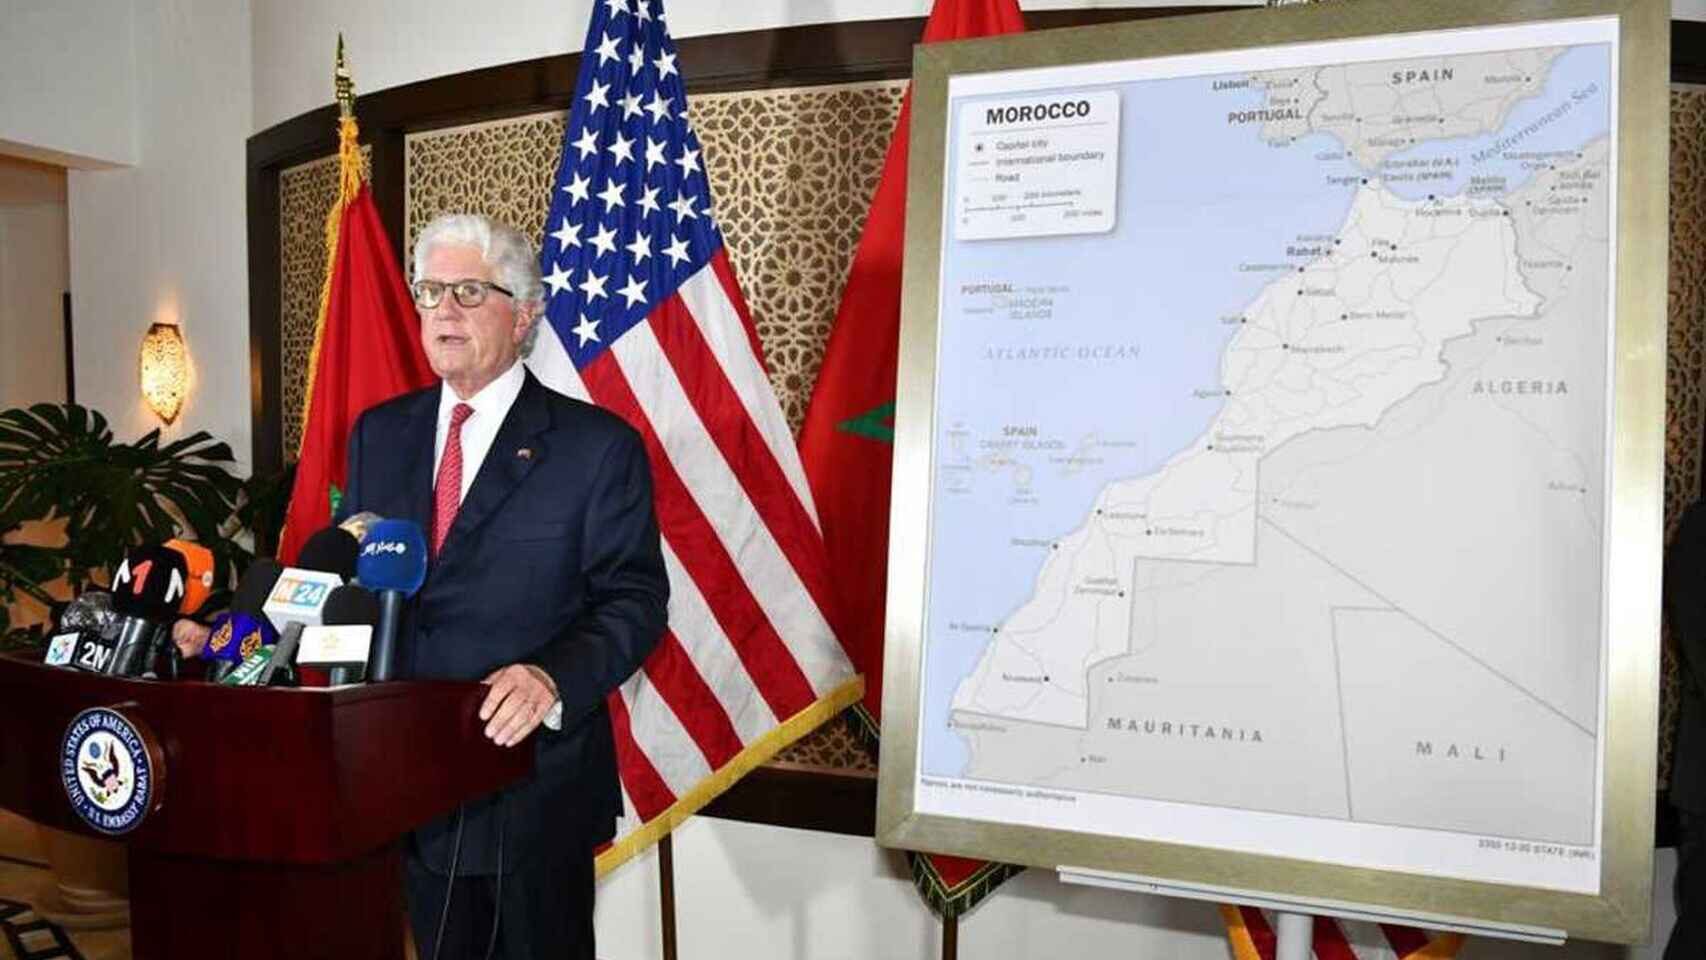 Resultados de buenas relaciones de régimenes marroquí e israelí: El embajador de EEUU regala a Mohamed VI un mapa de Marruecos con el Sáhara